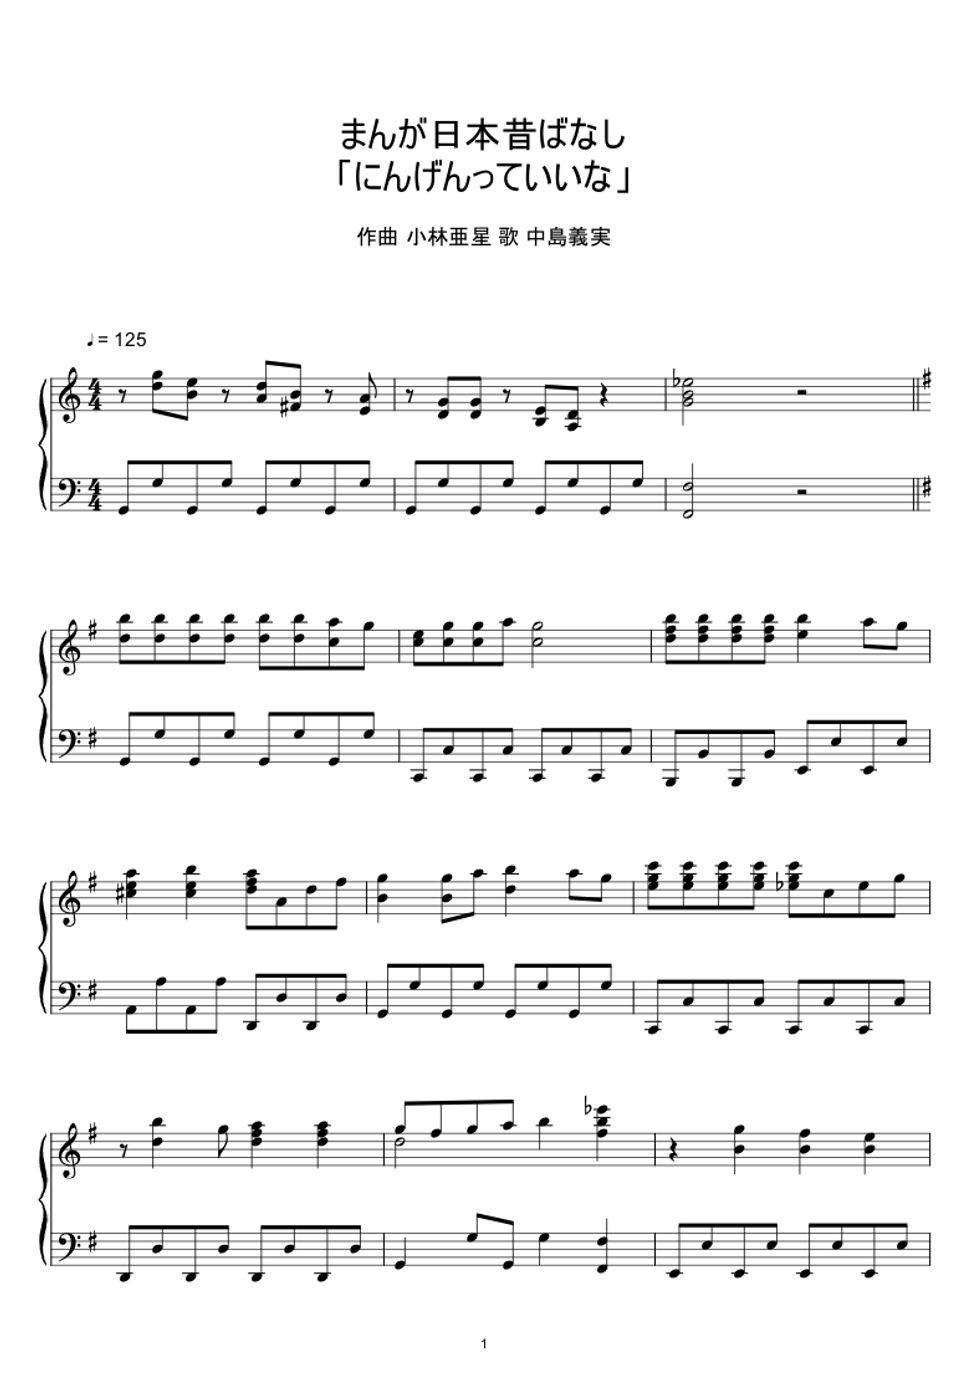 中嶋義実・ヤングフレッシュ - まんが日本昔ばなし 「にんげんっていいな」 (楽譜, MIDI,) by sayu